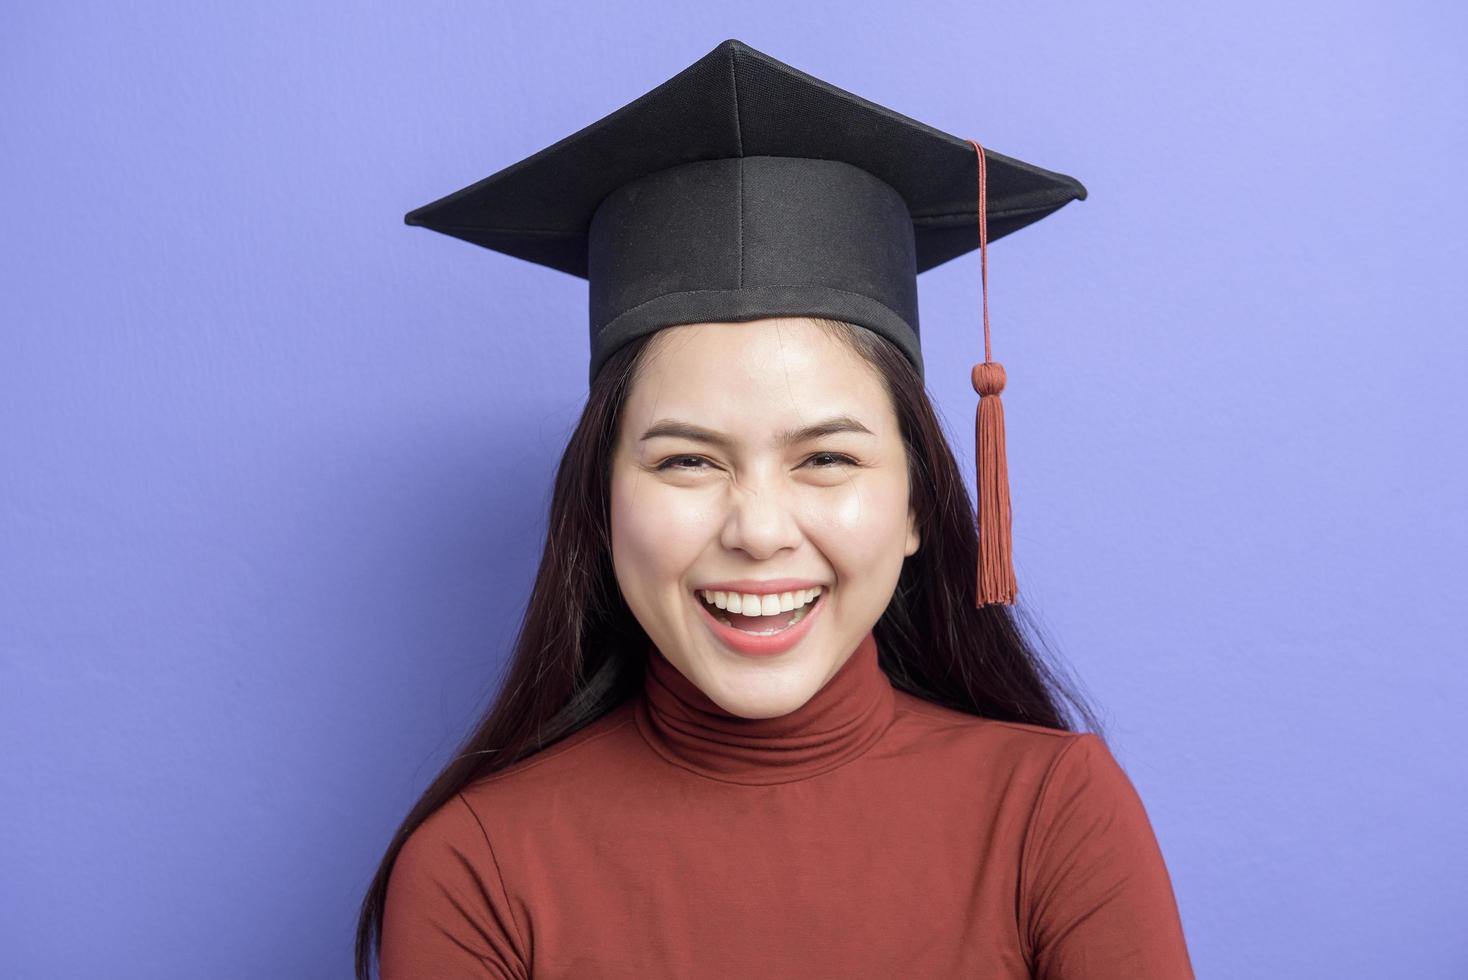 ritratto di giovane studentessa universitaria con cappuccio di laurea su sfondo viola foto